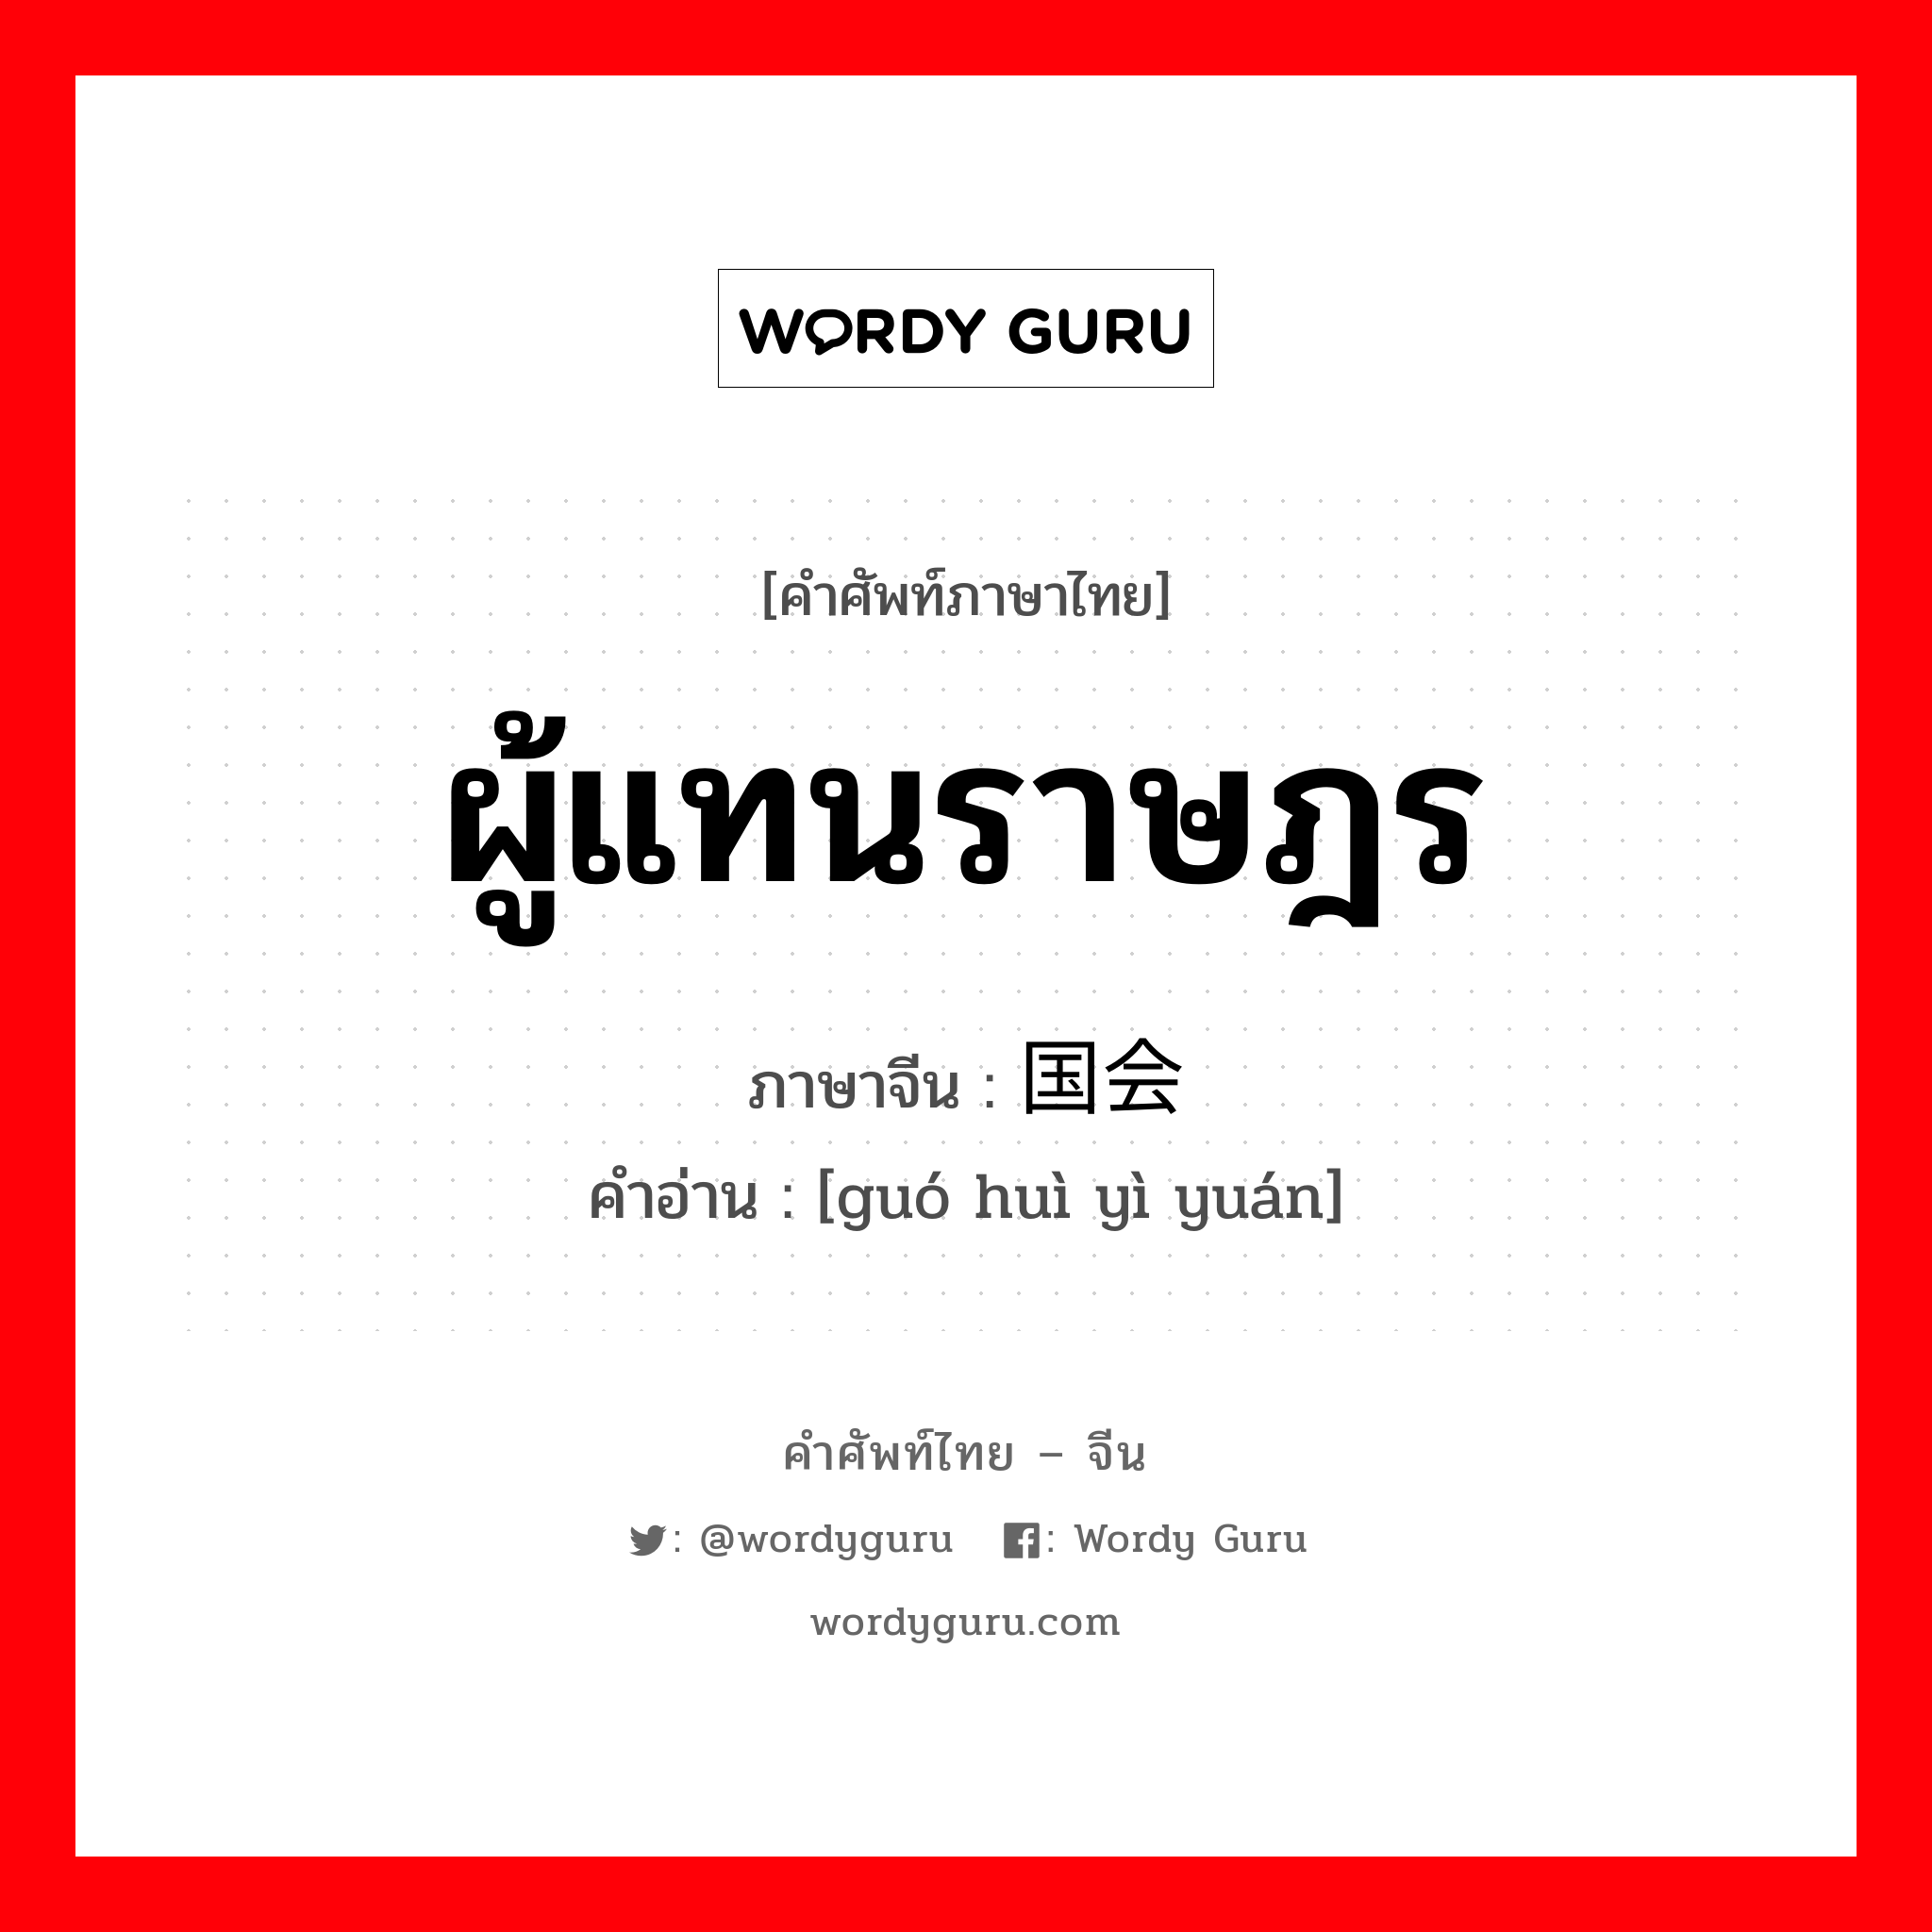 ผู้แทนราษฎร ภาษาจีนคืออะไร, คำศัพท์ภาษาไทย - จีน ผู้แทนราษฎร ภาษาจีน 国会议员 คำอ่าน [guó huì yì yuán]